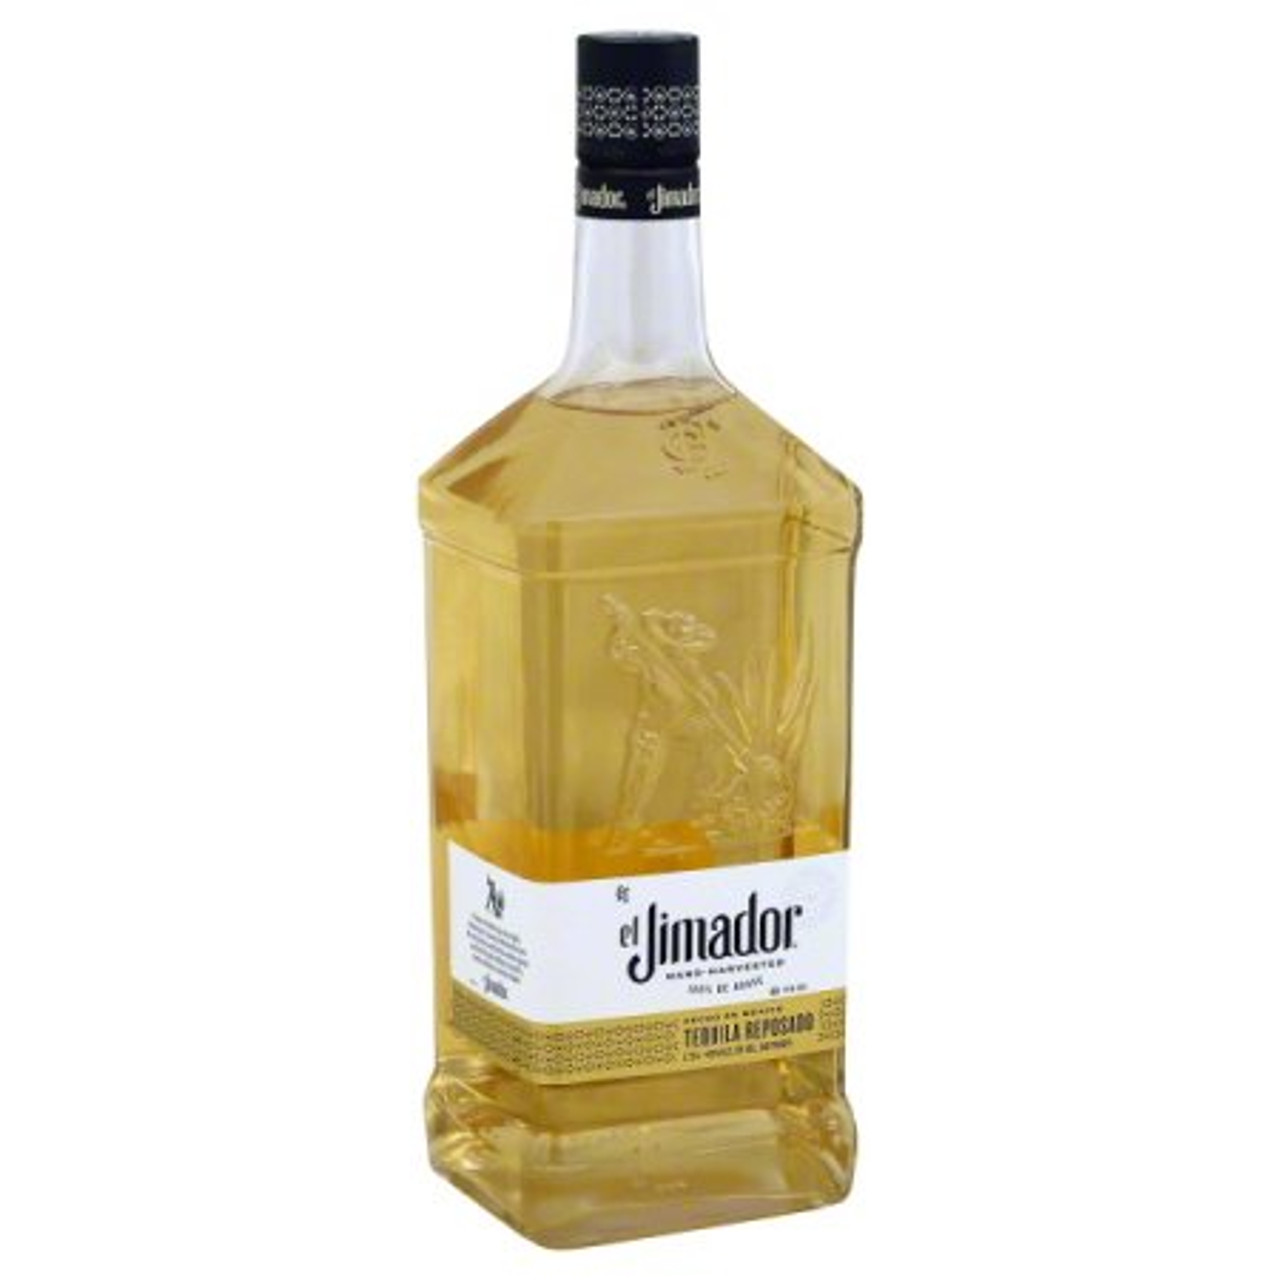 El Jimador Reposado Tequila 1.75L